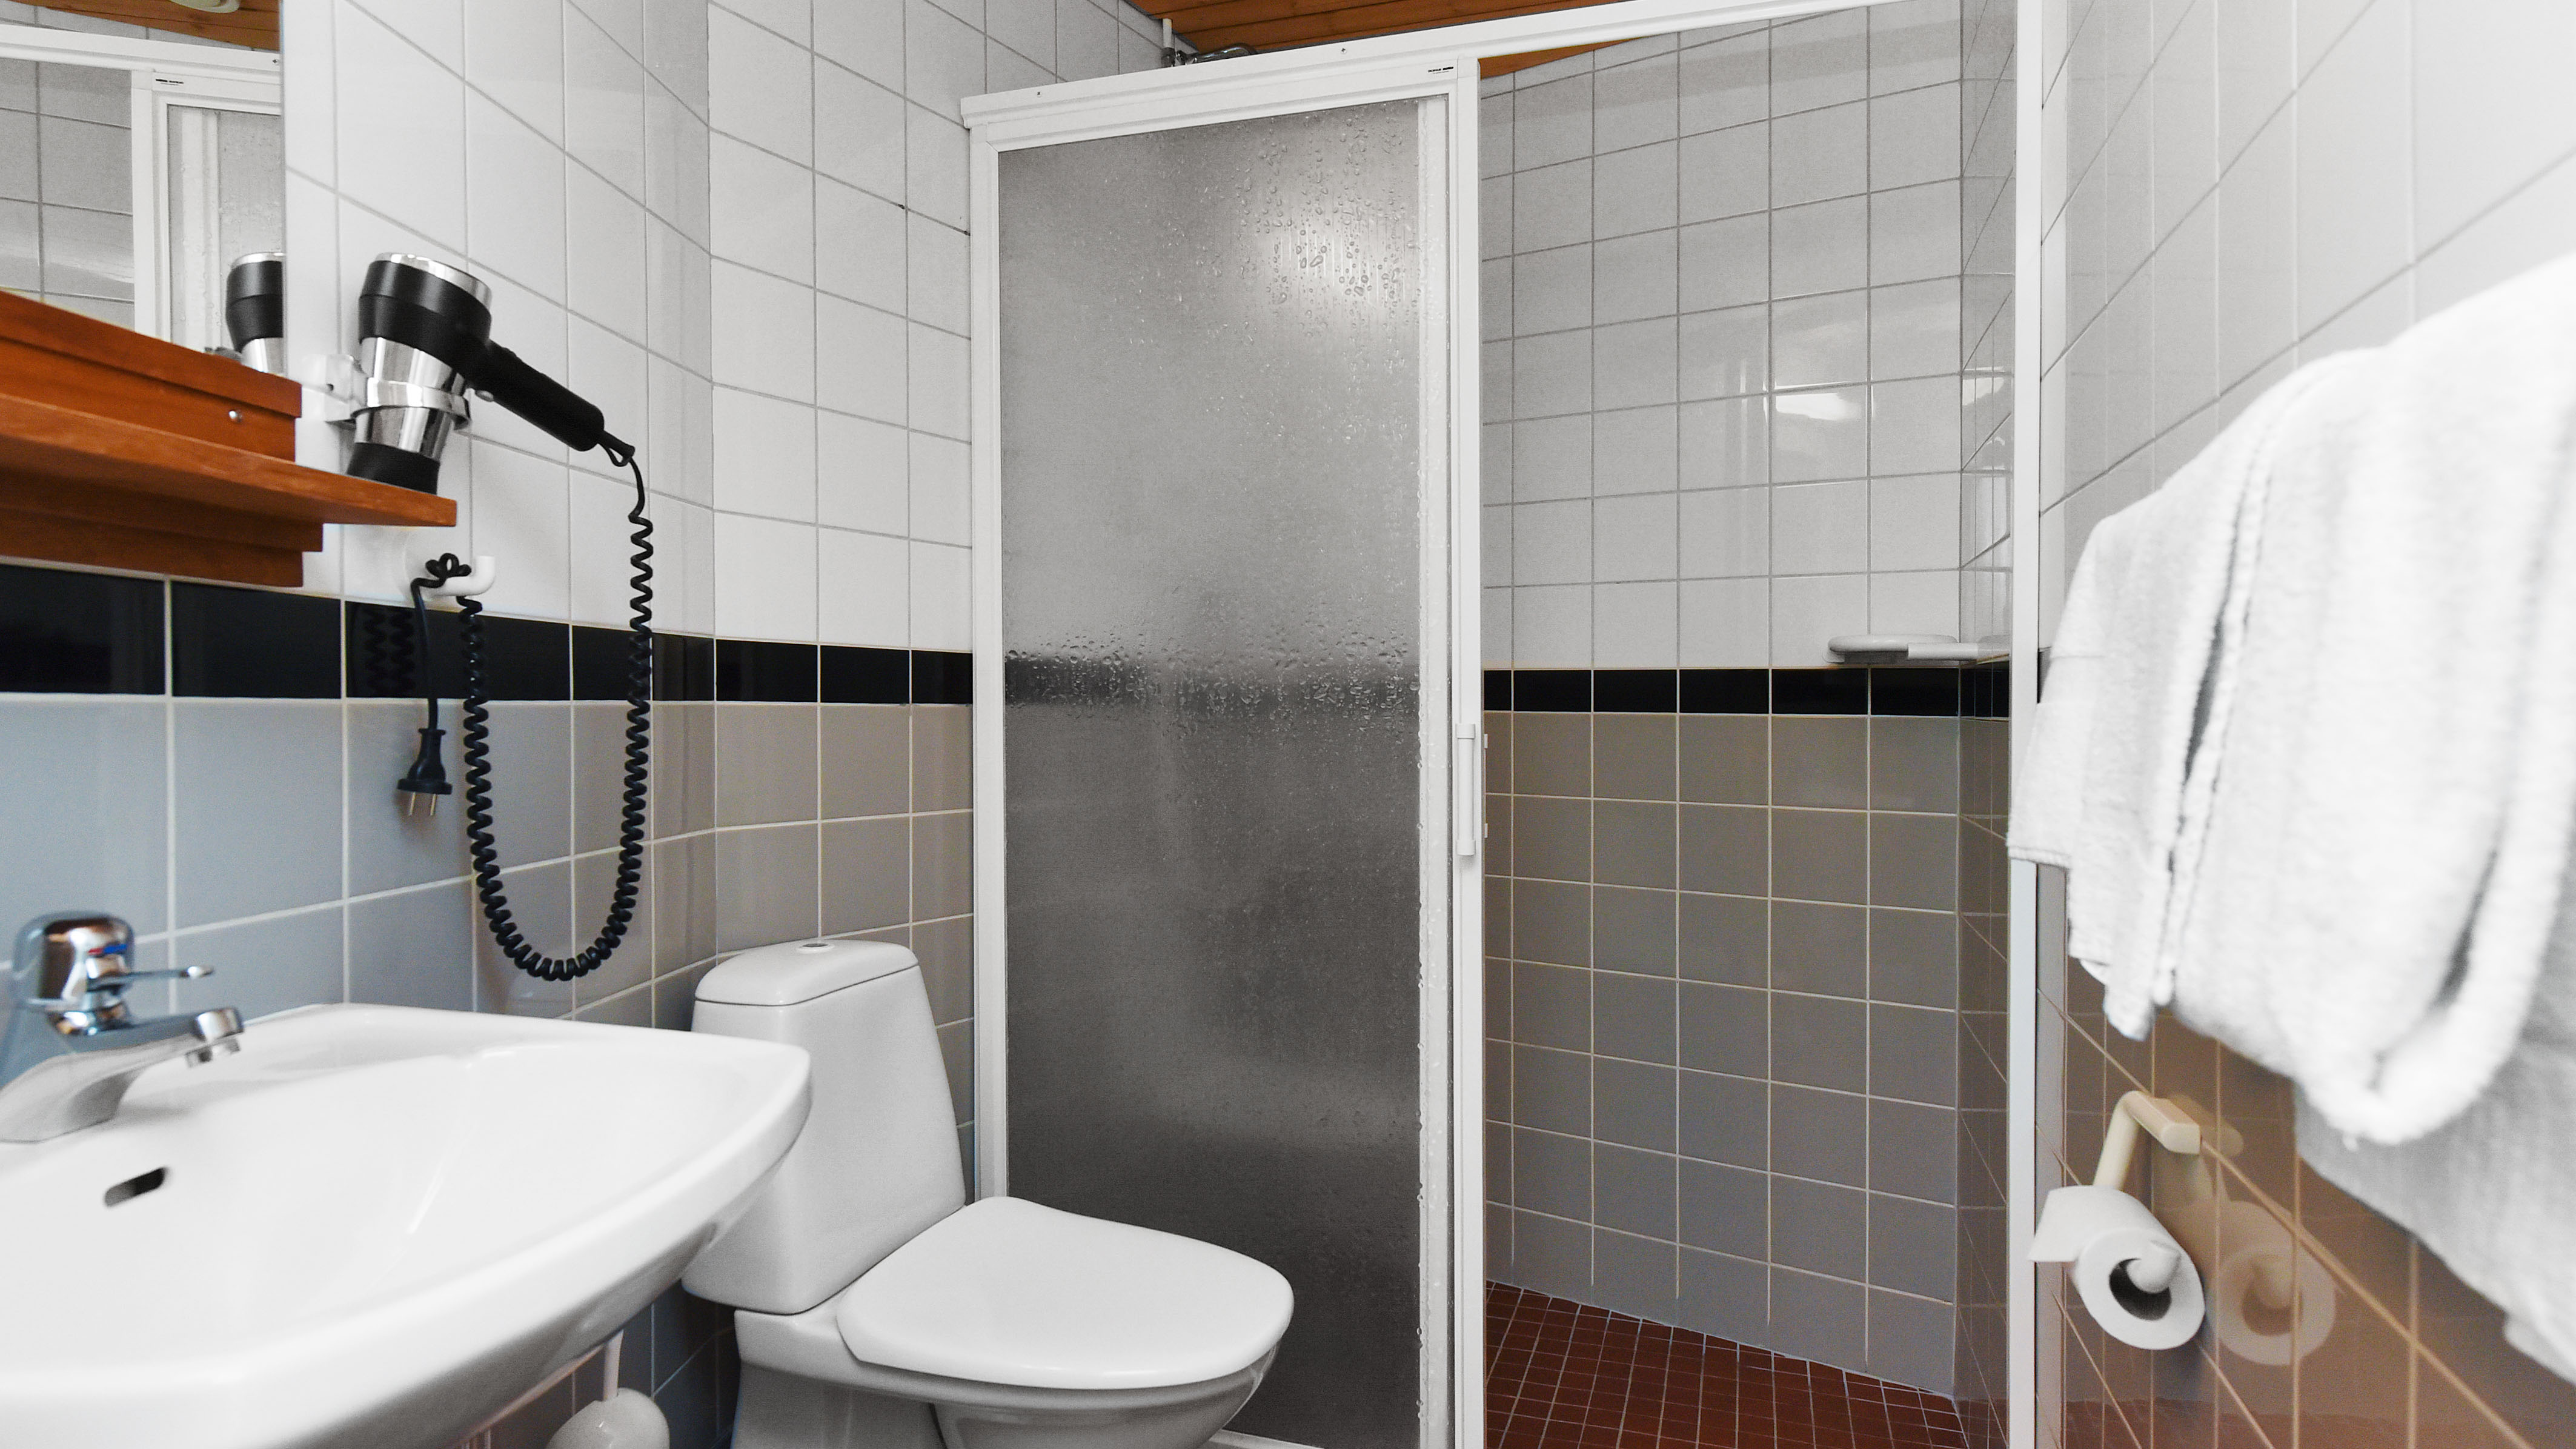 Dusch och wc i kategori elevrum på Ersta hotell